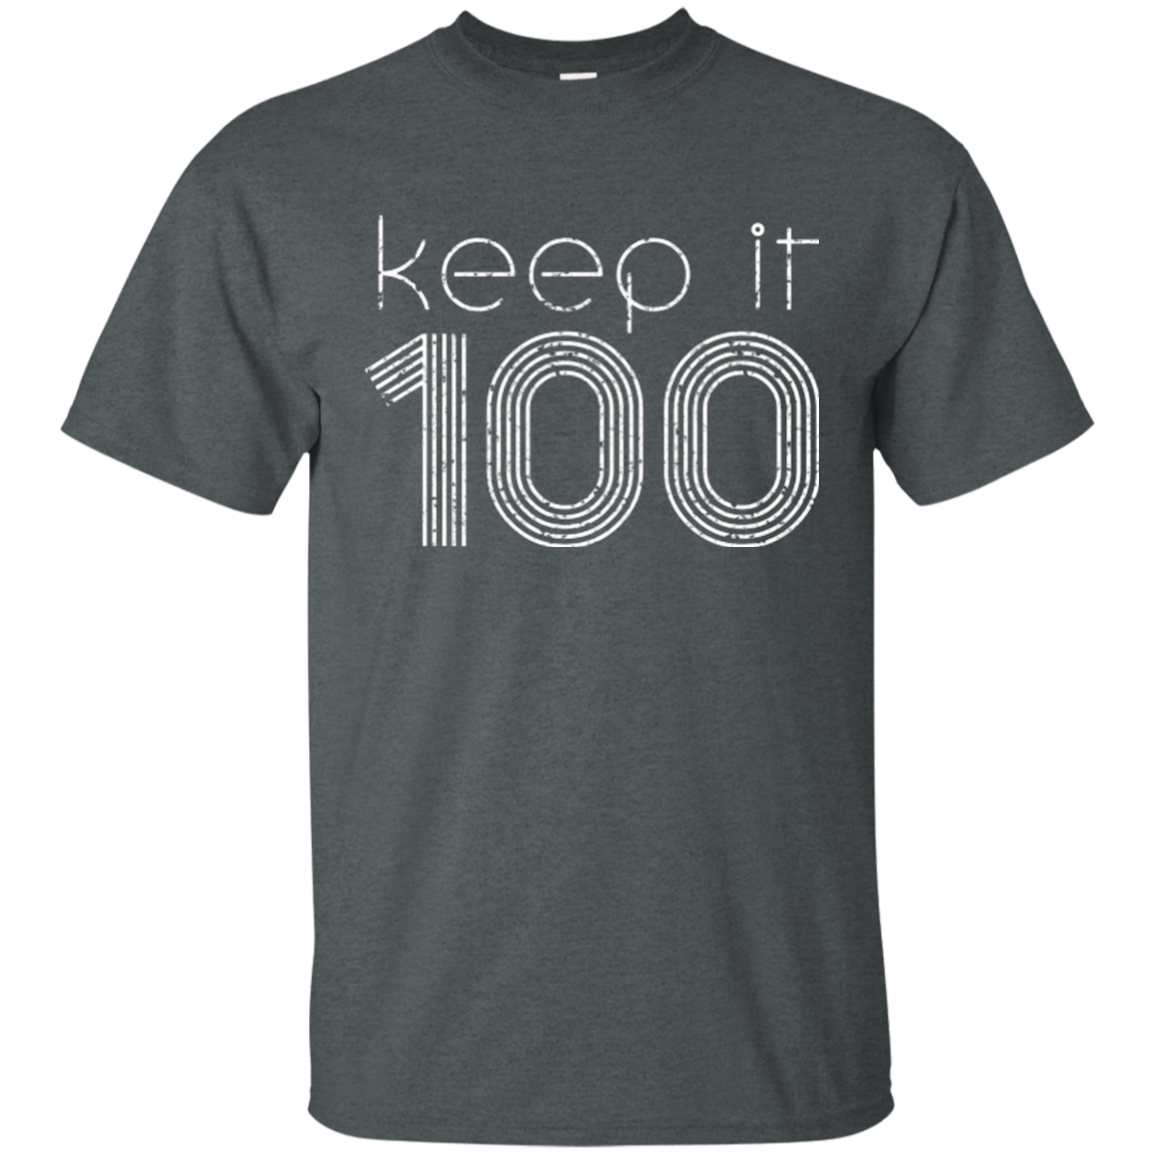 KEEP IT 100 WHT T-SHIRT